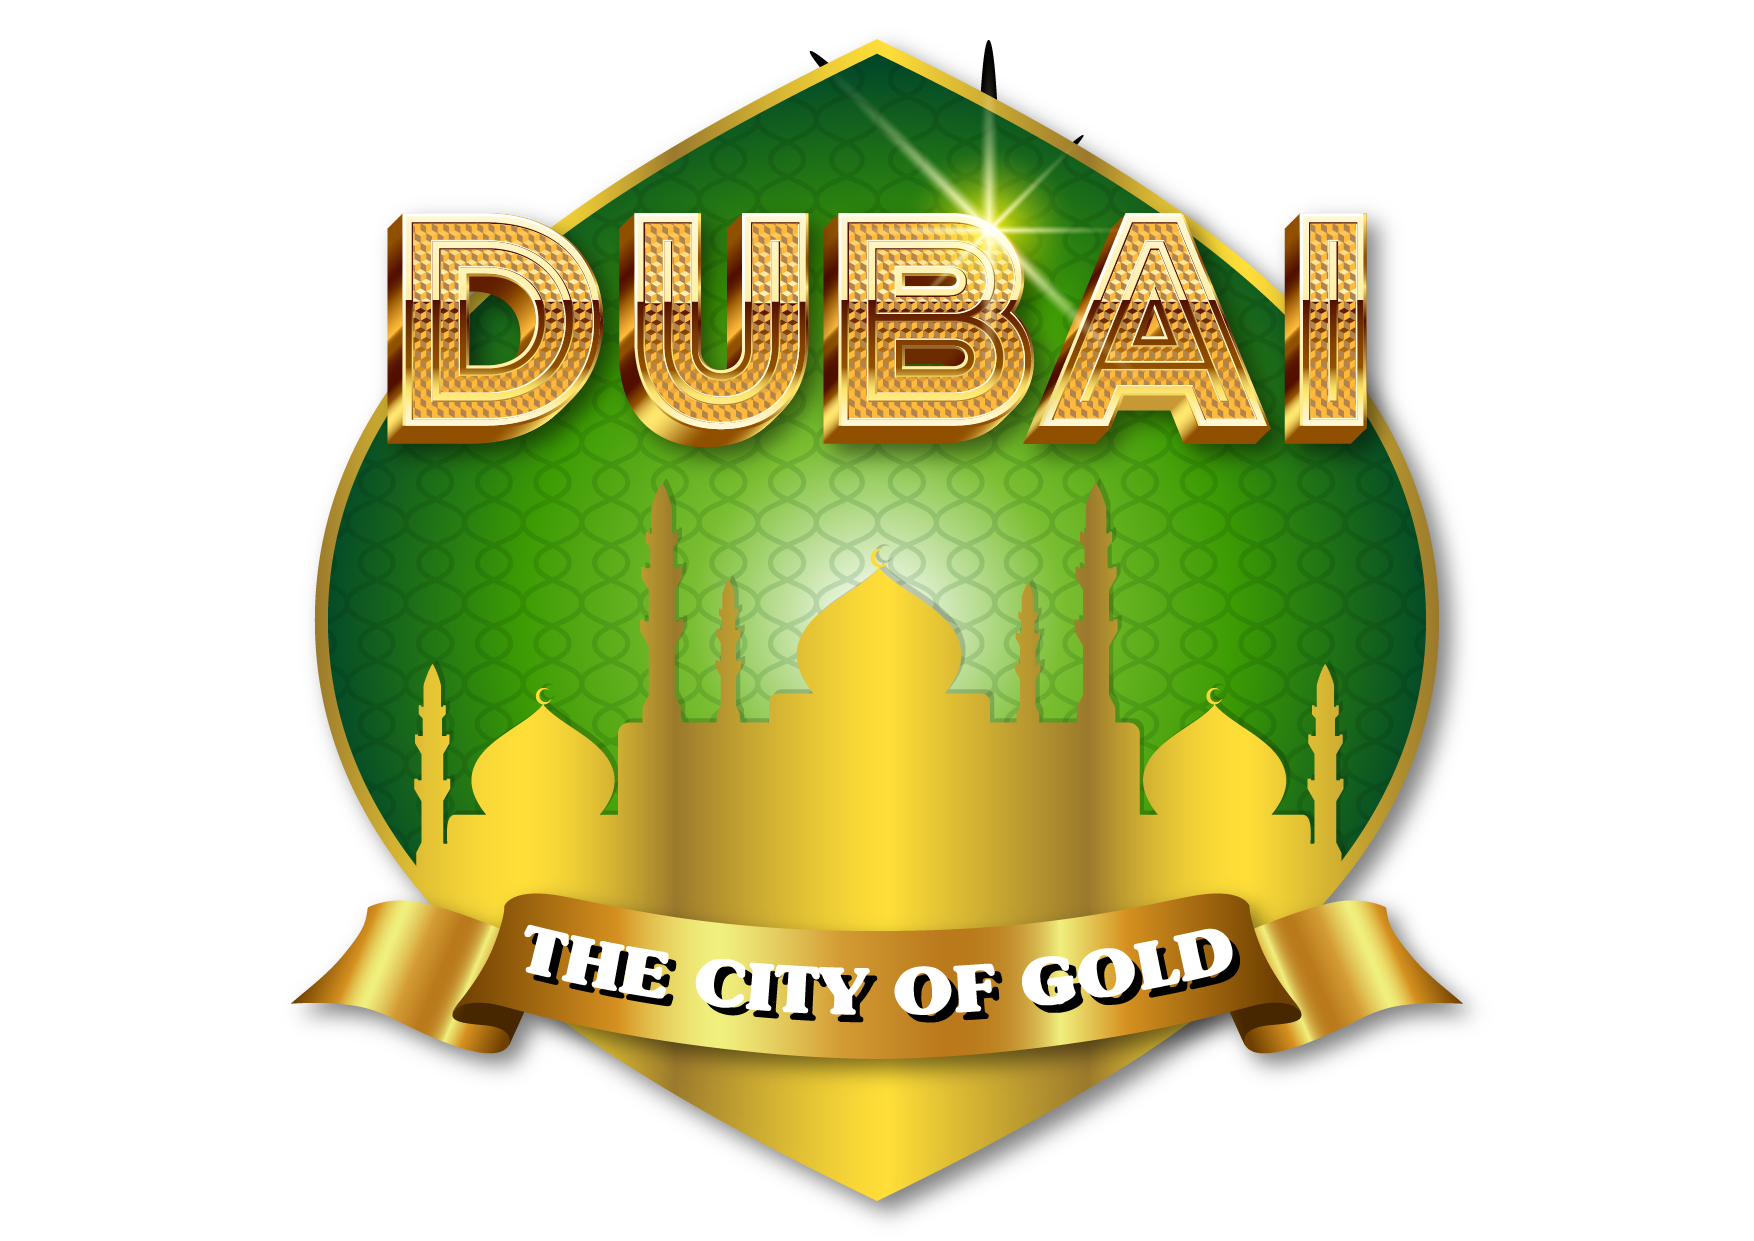 Dubai City of Gold